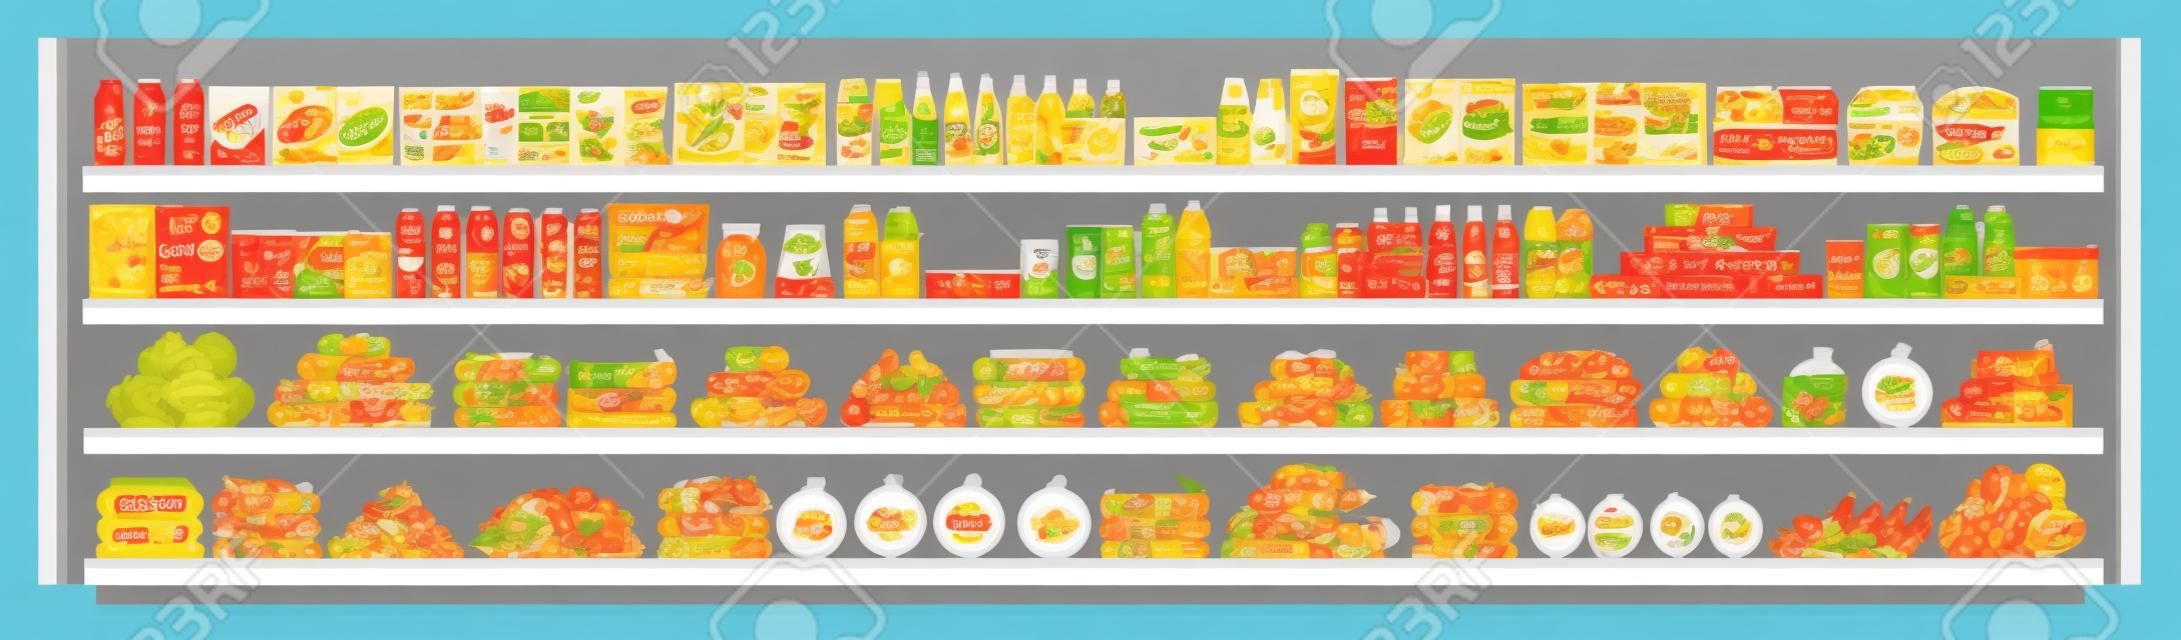 スーパーマーケットの棚に食料品や食品や飲み物のフラットベクターシームレスな背景イラストの品揃えと完全に提供しています。ショッピングと小売のコンセプト。